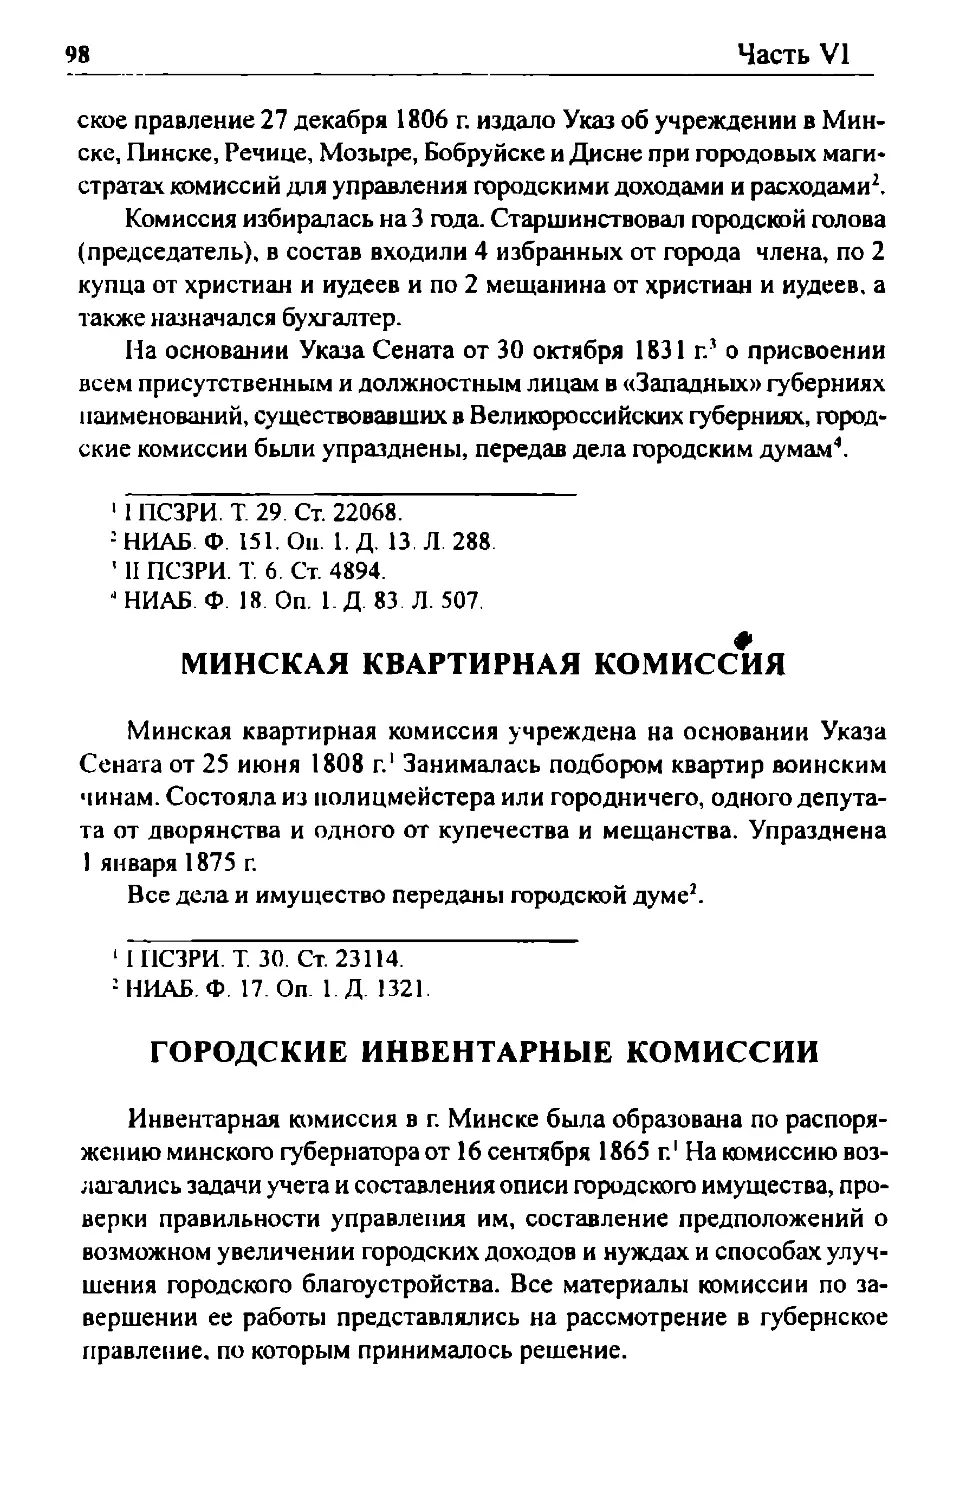 Минская квартирная комиссия
Городские инвентарные комиссии